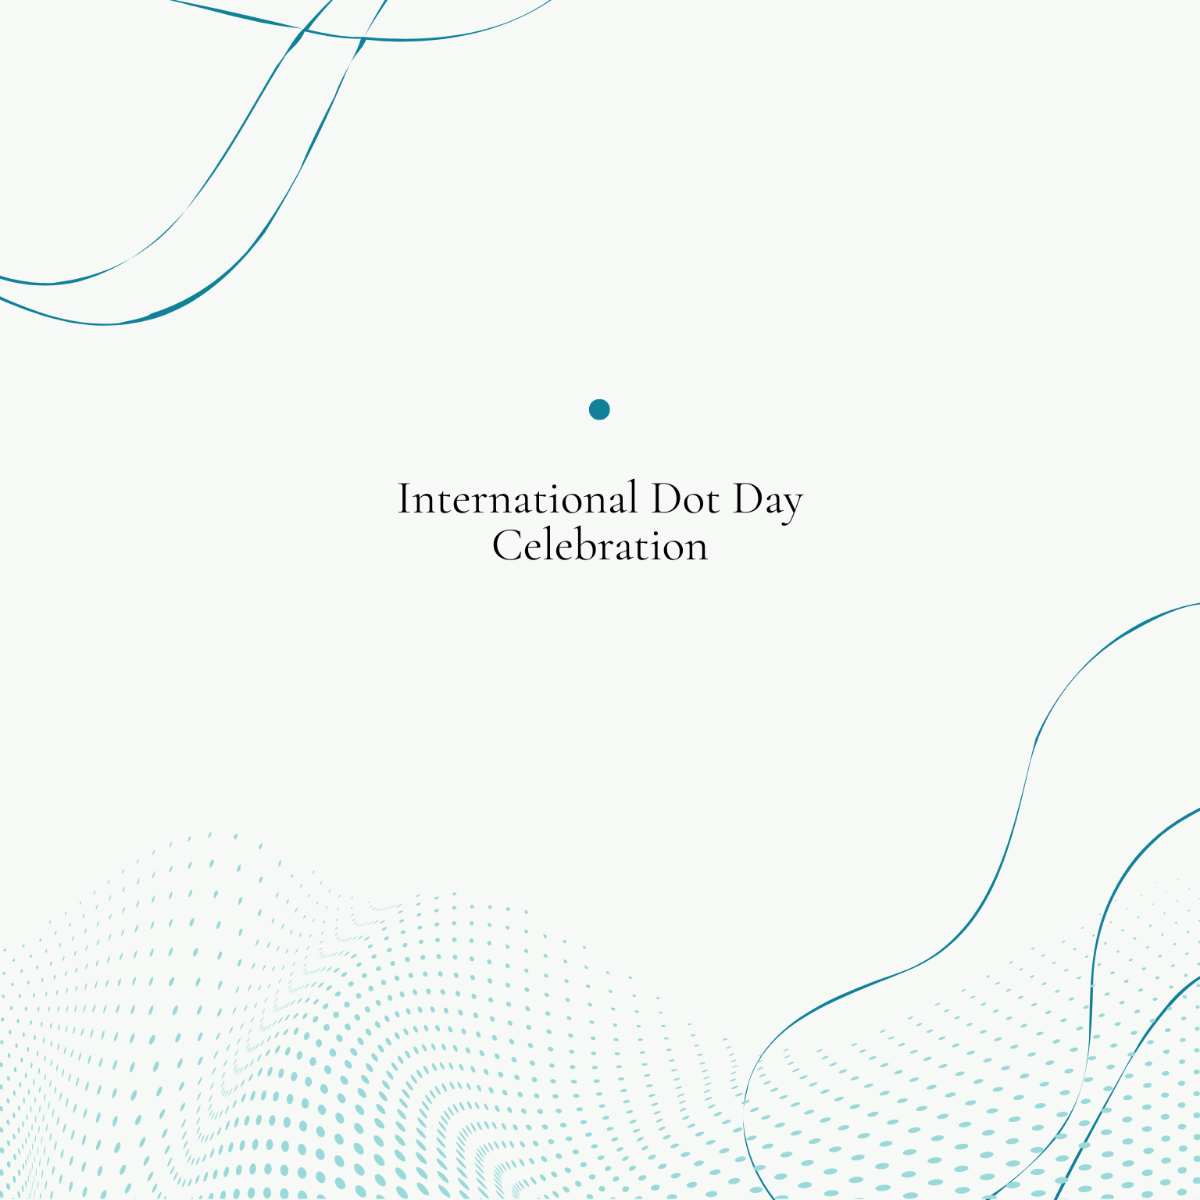 International Dot Day Celebration Vector